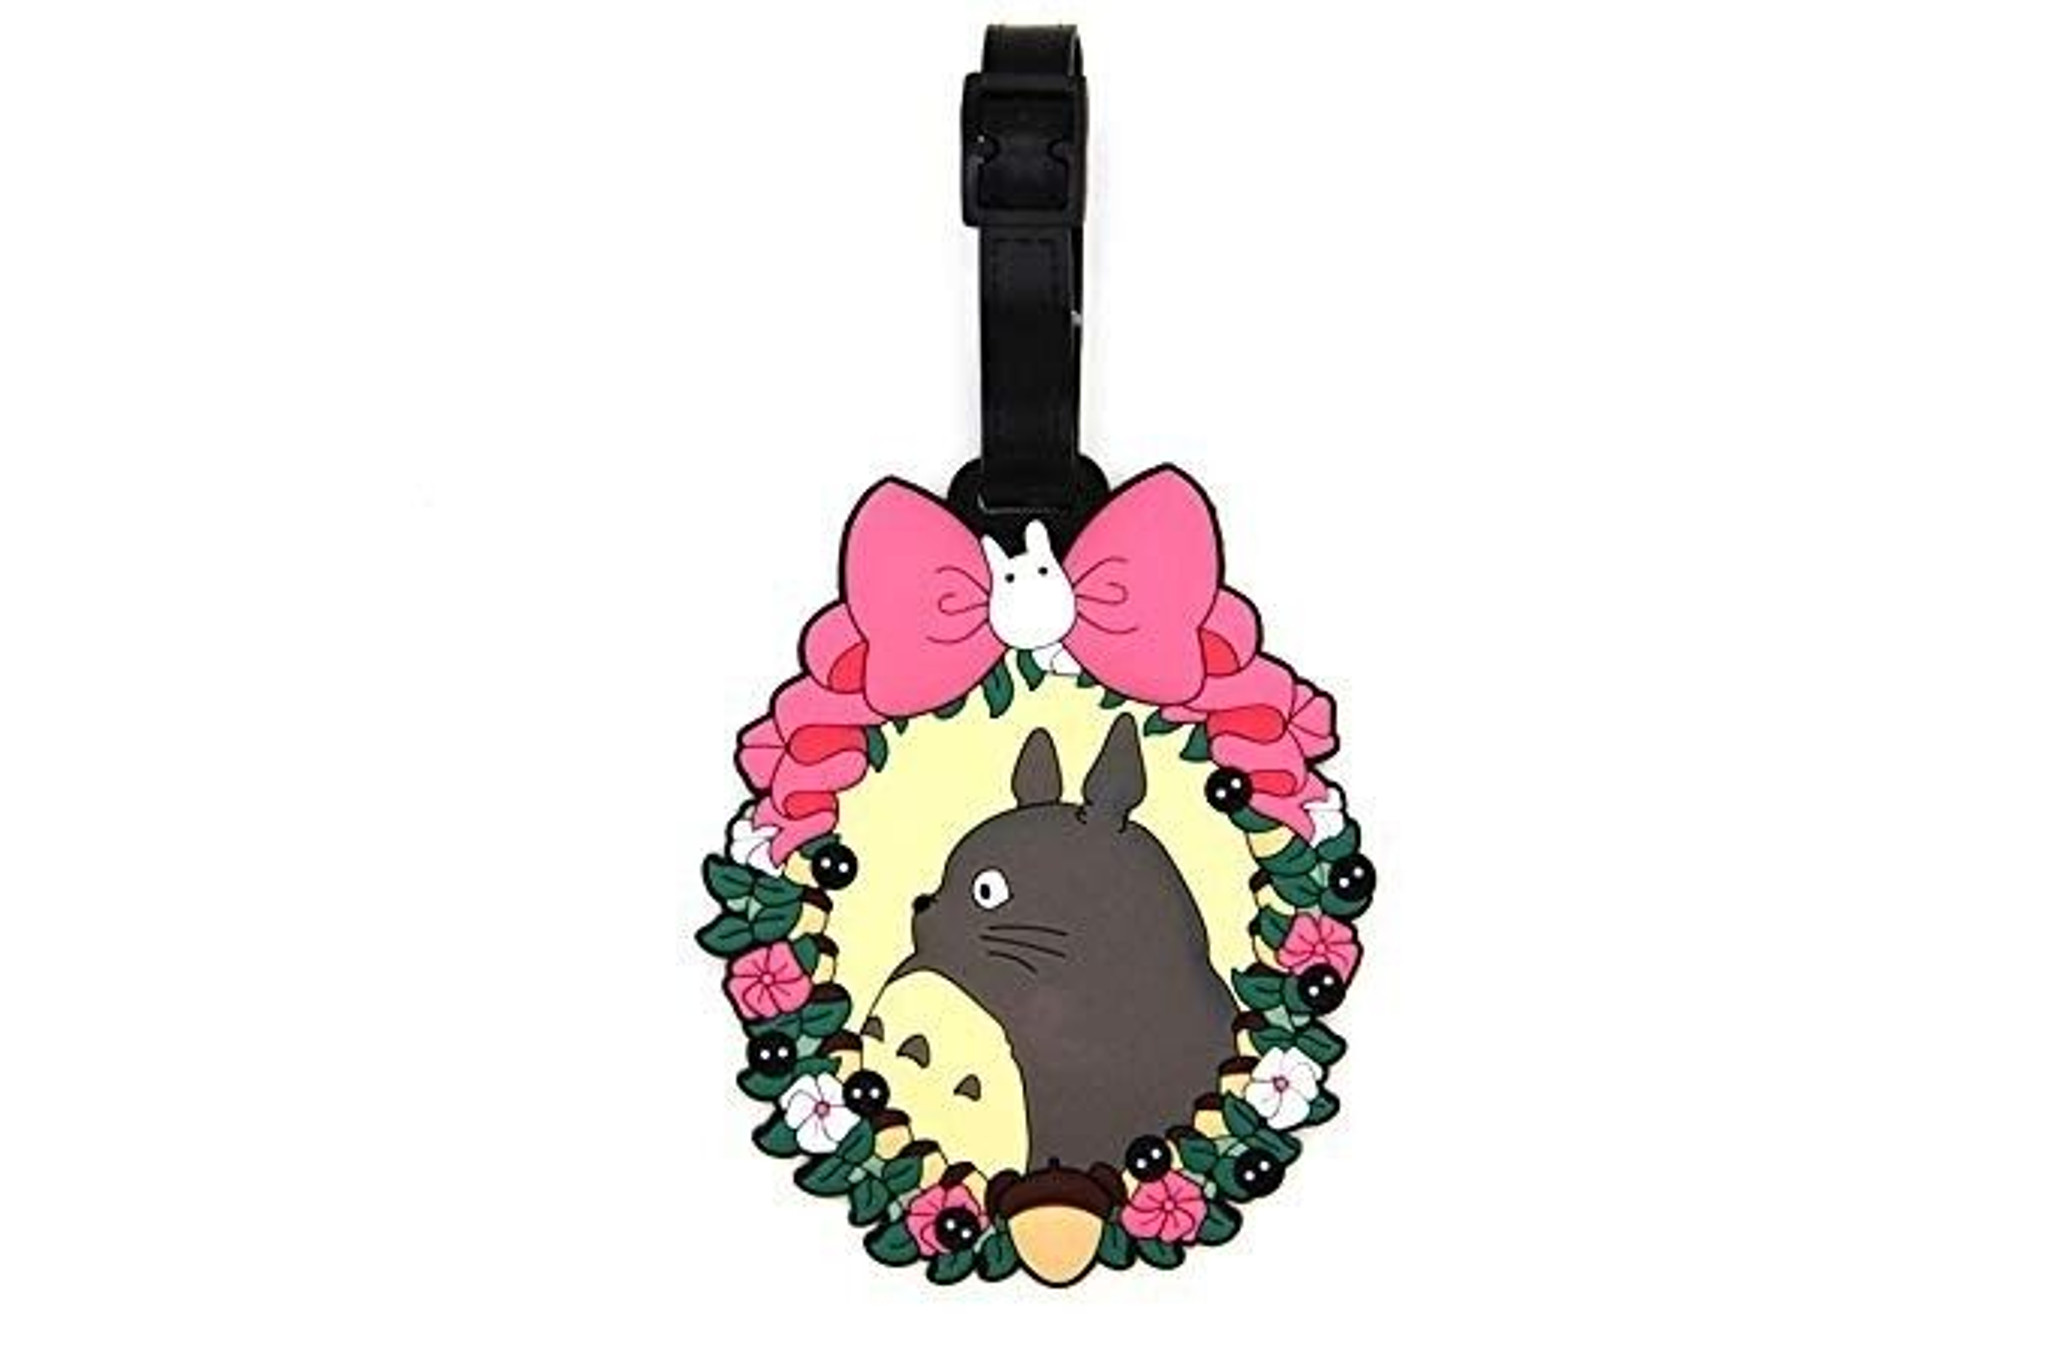 STUDIO GHIBLI: Totoro Floral Wreath Luggage Tag